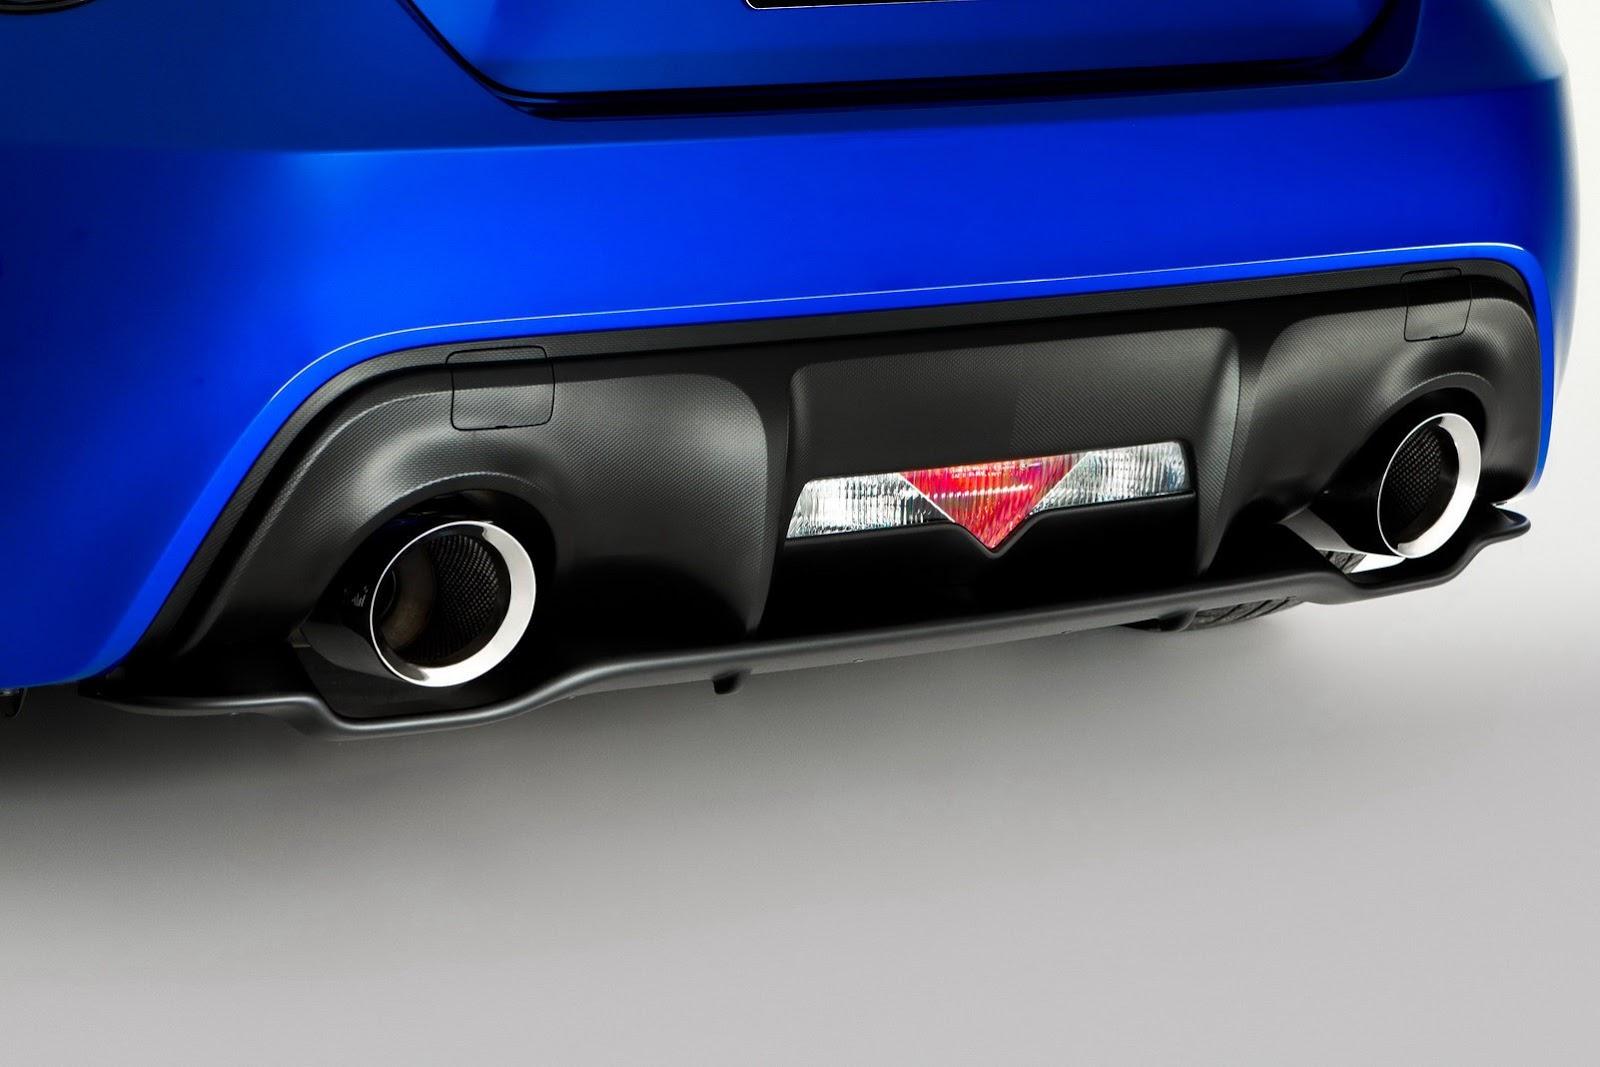 Subaru BRZ STI Concept AIMS